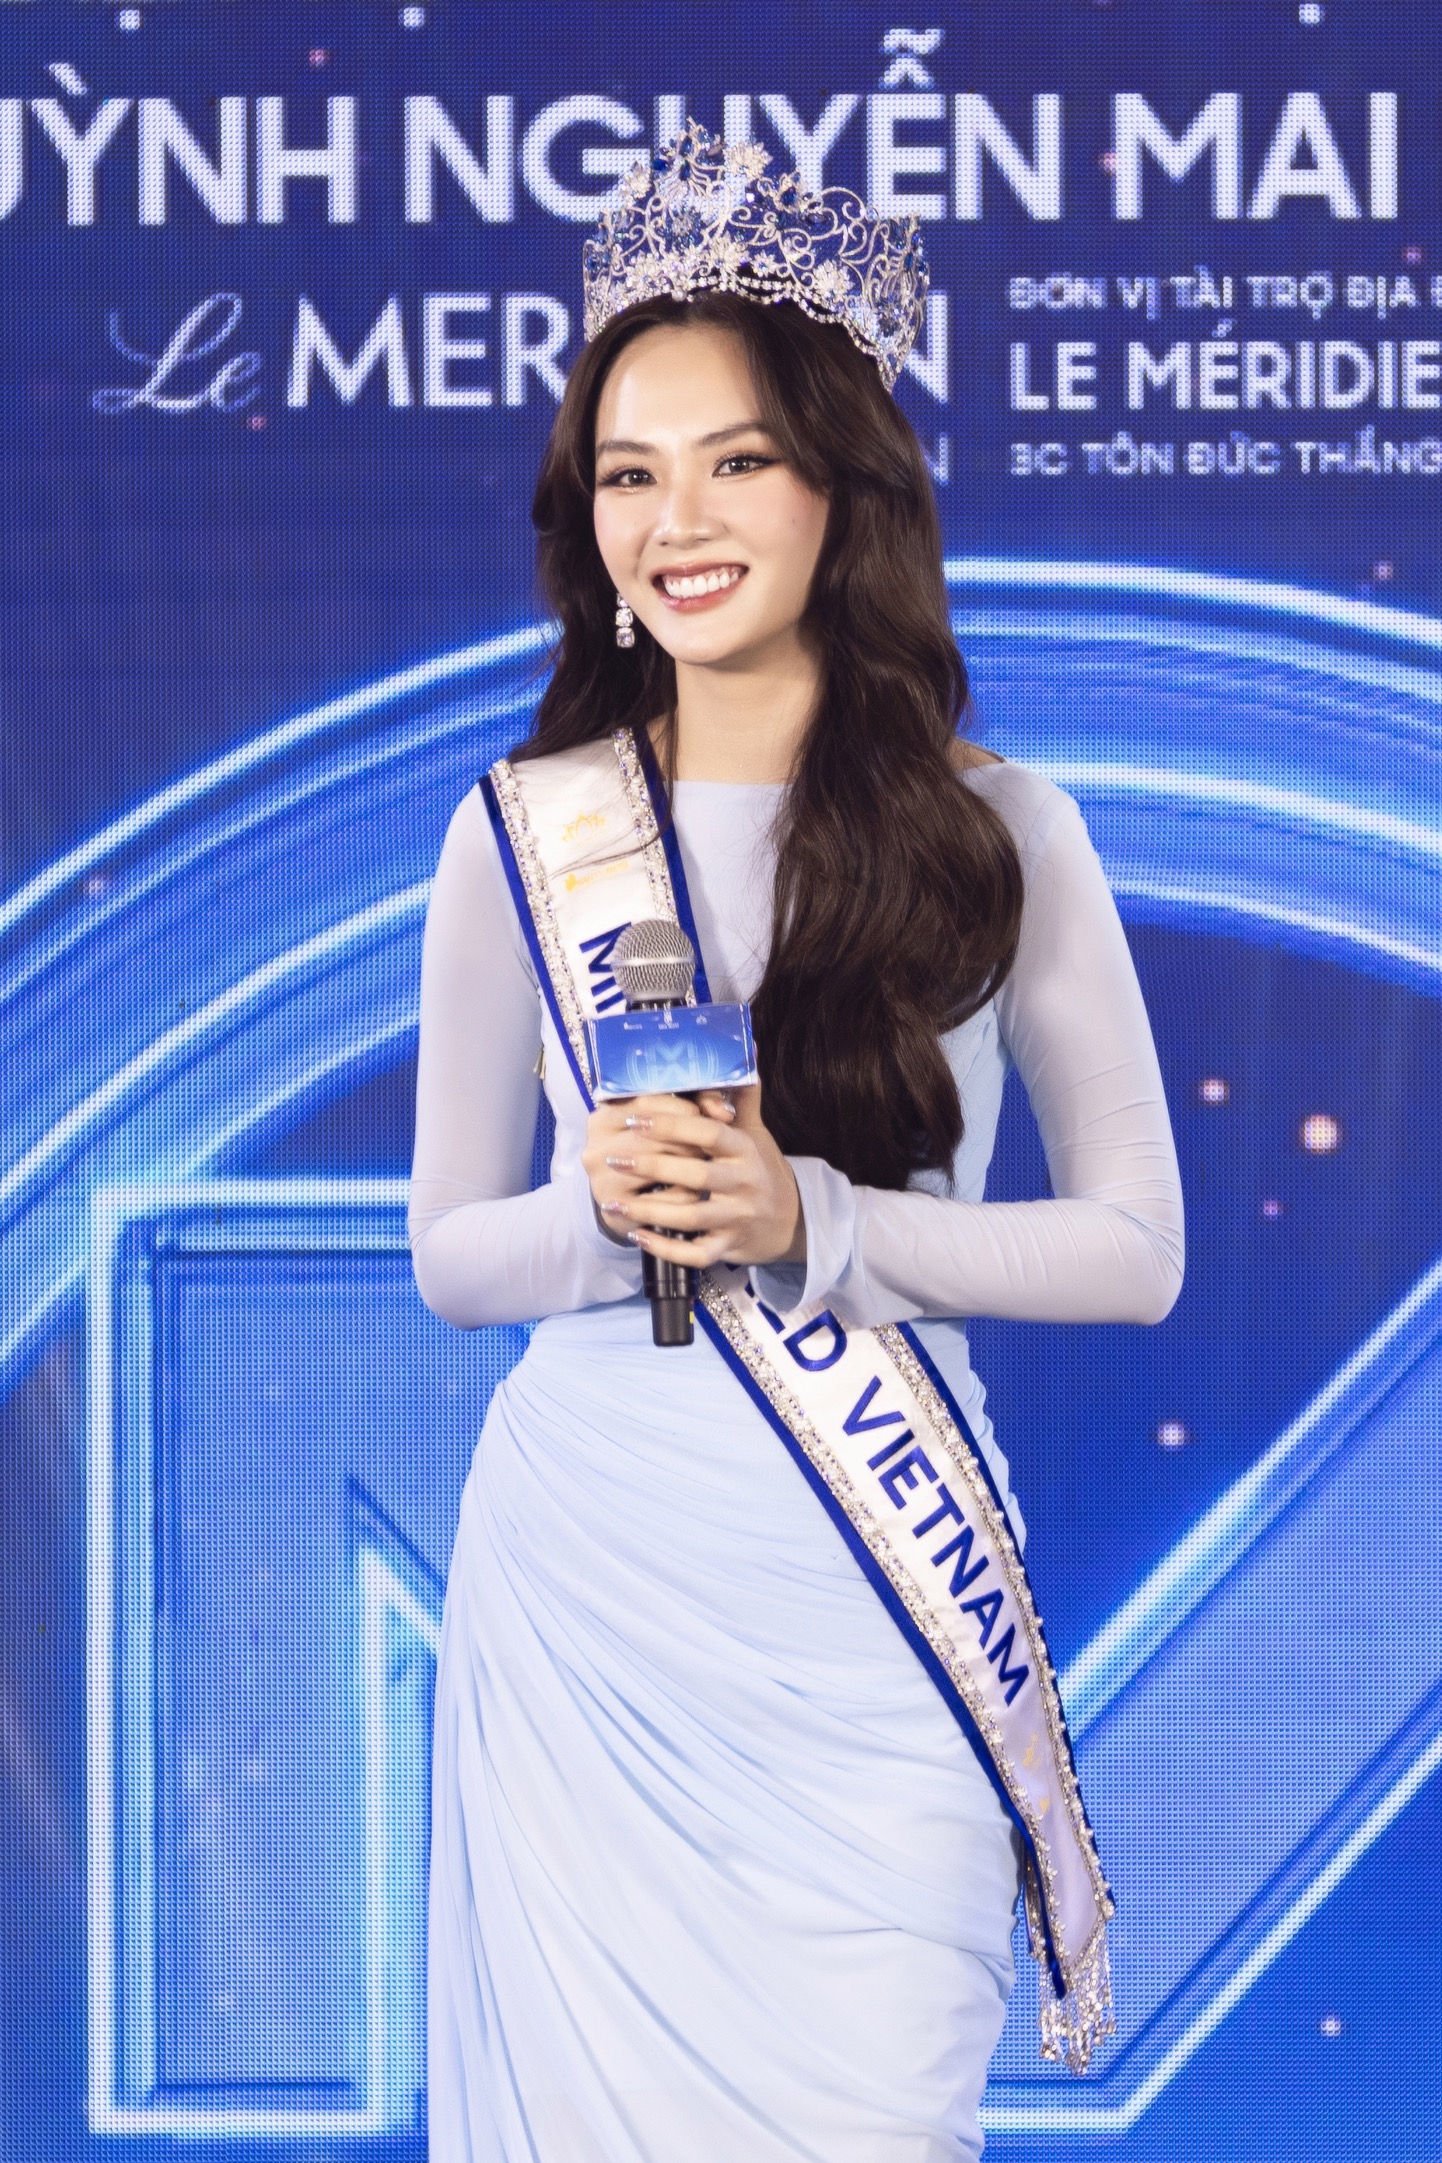 Hoa hậu Mai Phương công bố loạt váy áo tại Miss World, 1 nhân vật đặc biệt và dàn Hậu đình đám góp mặt- Ảnh 11.